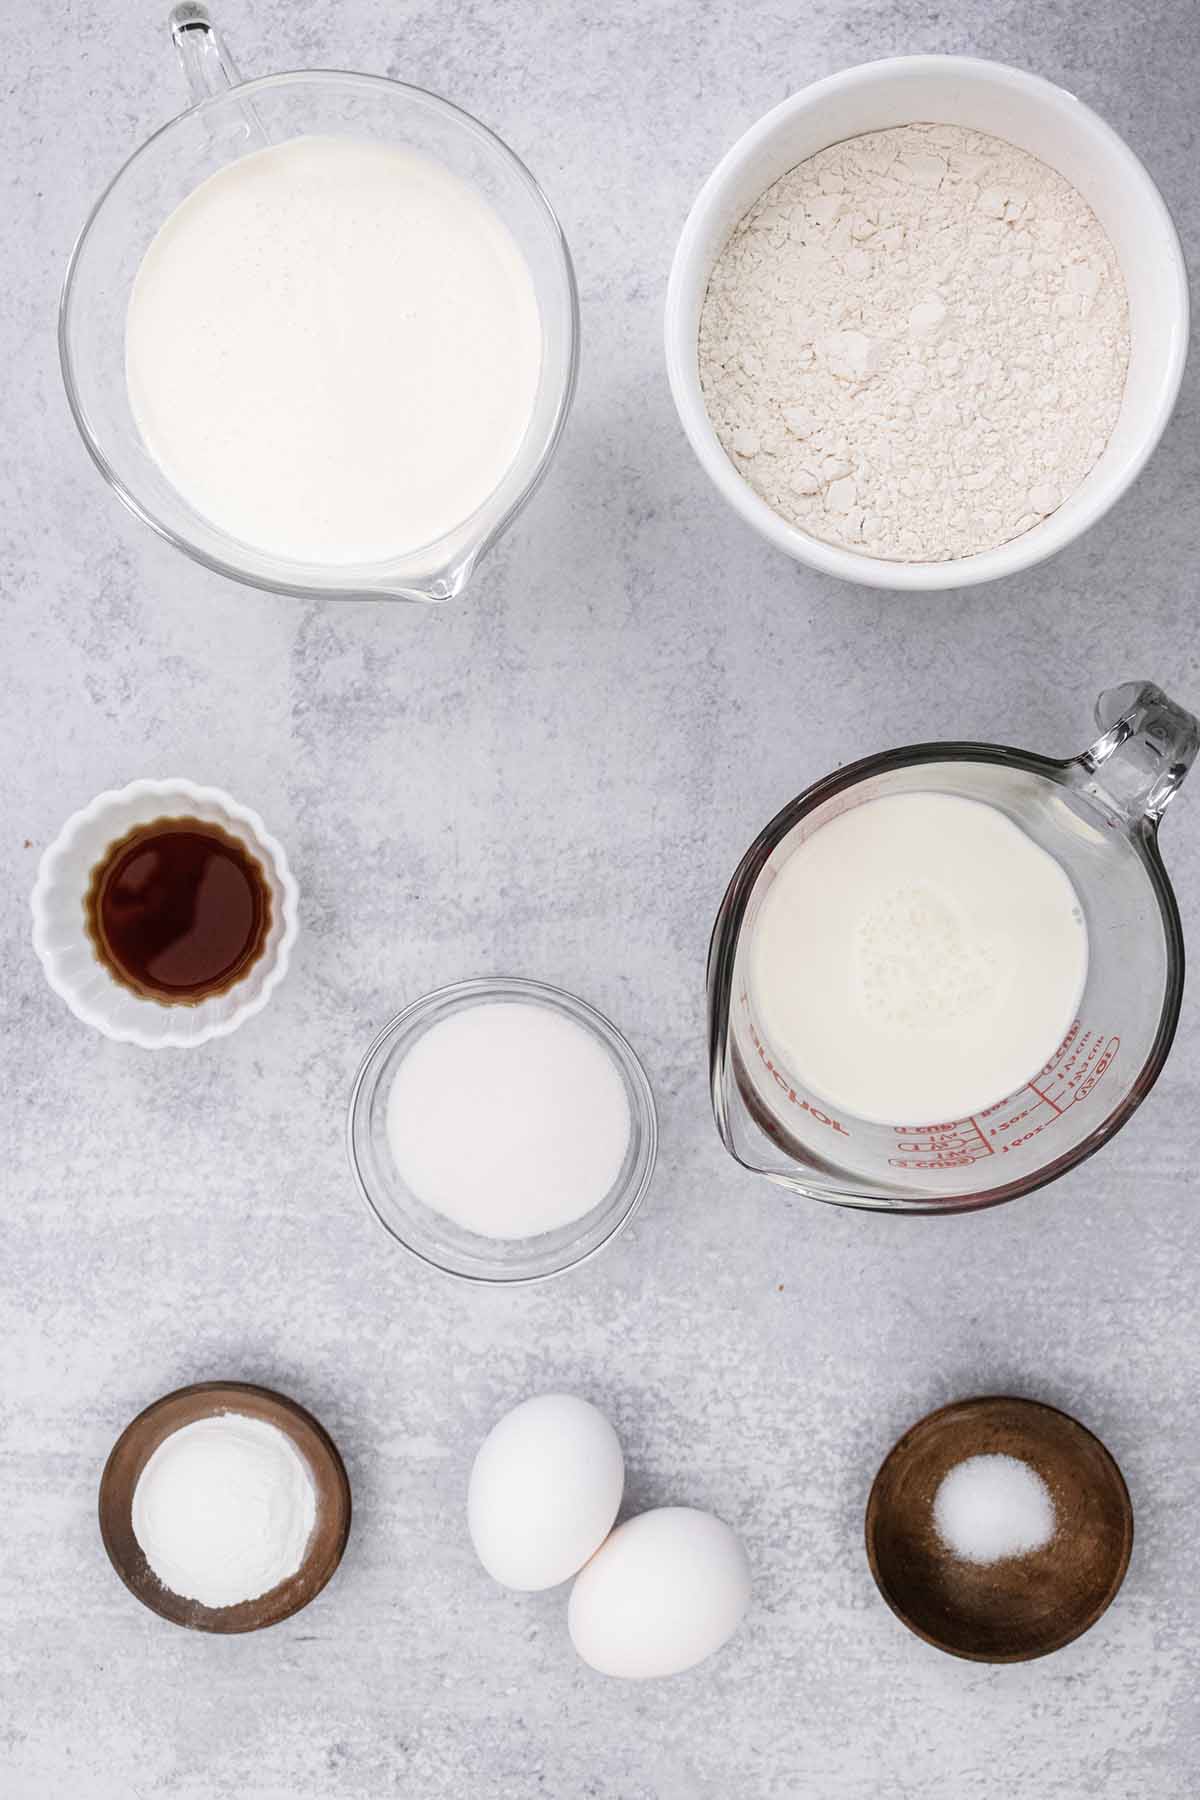 Sweet cream pancake ingredients